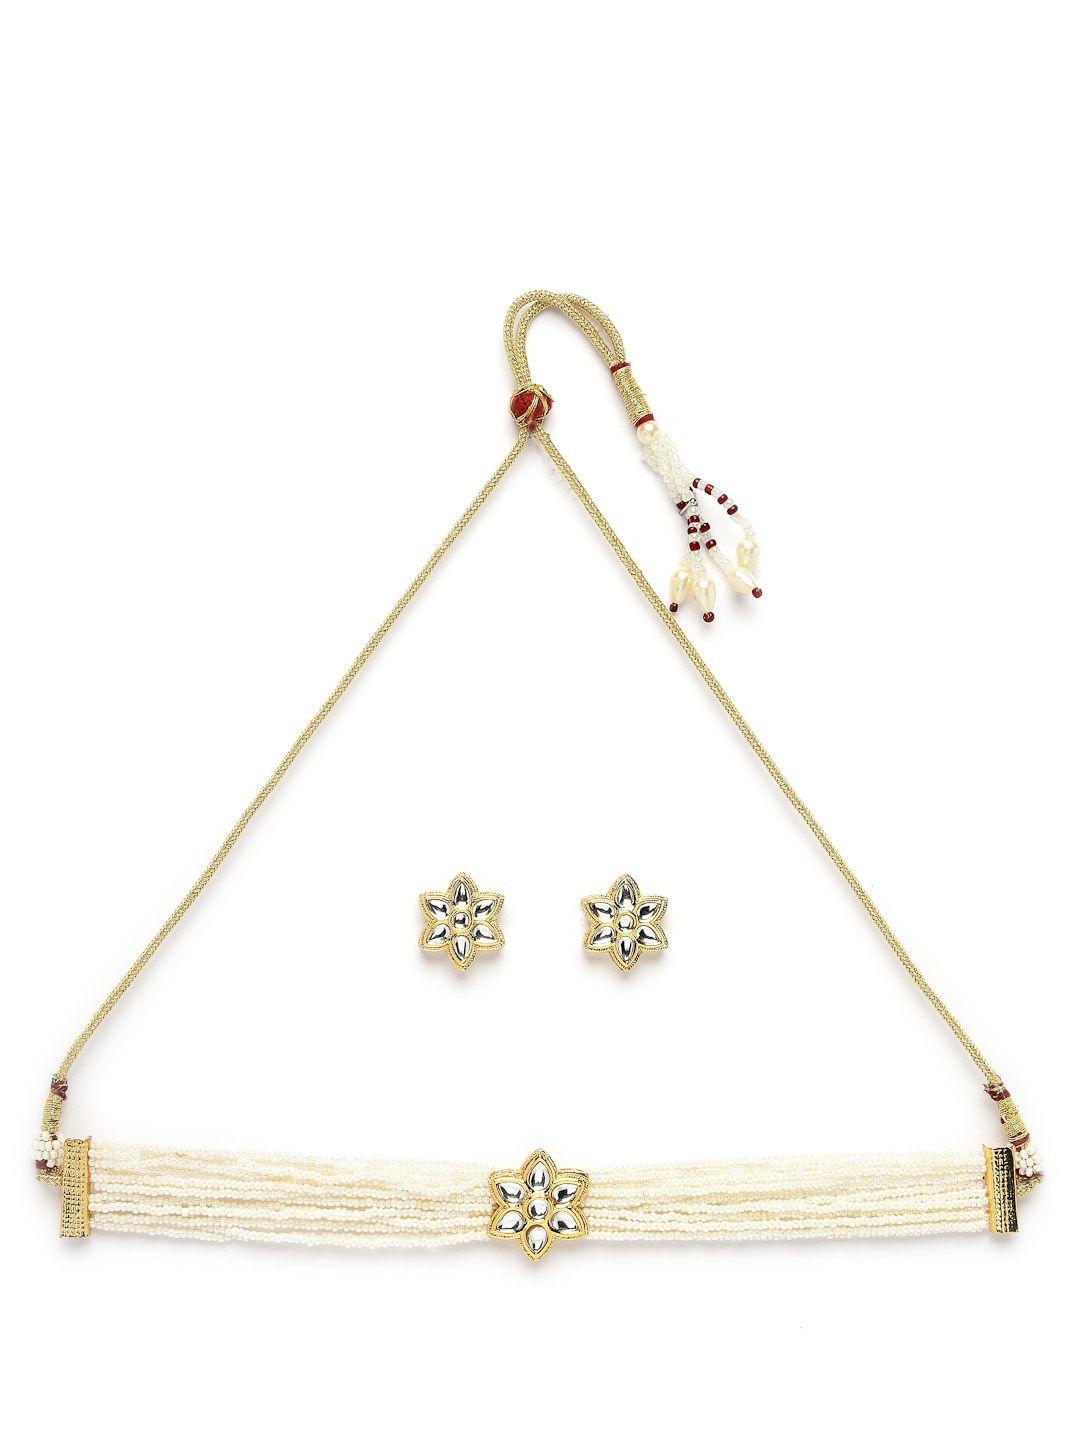 ADIVA Gold-Plated Kundan-Studded & Beaded Jewellery Set